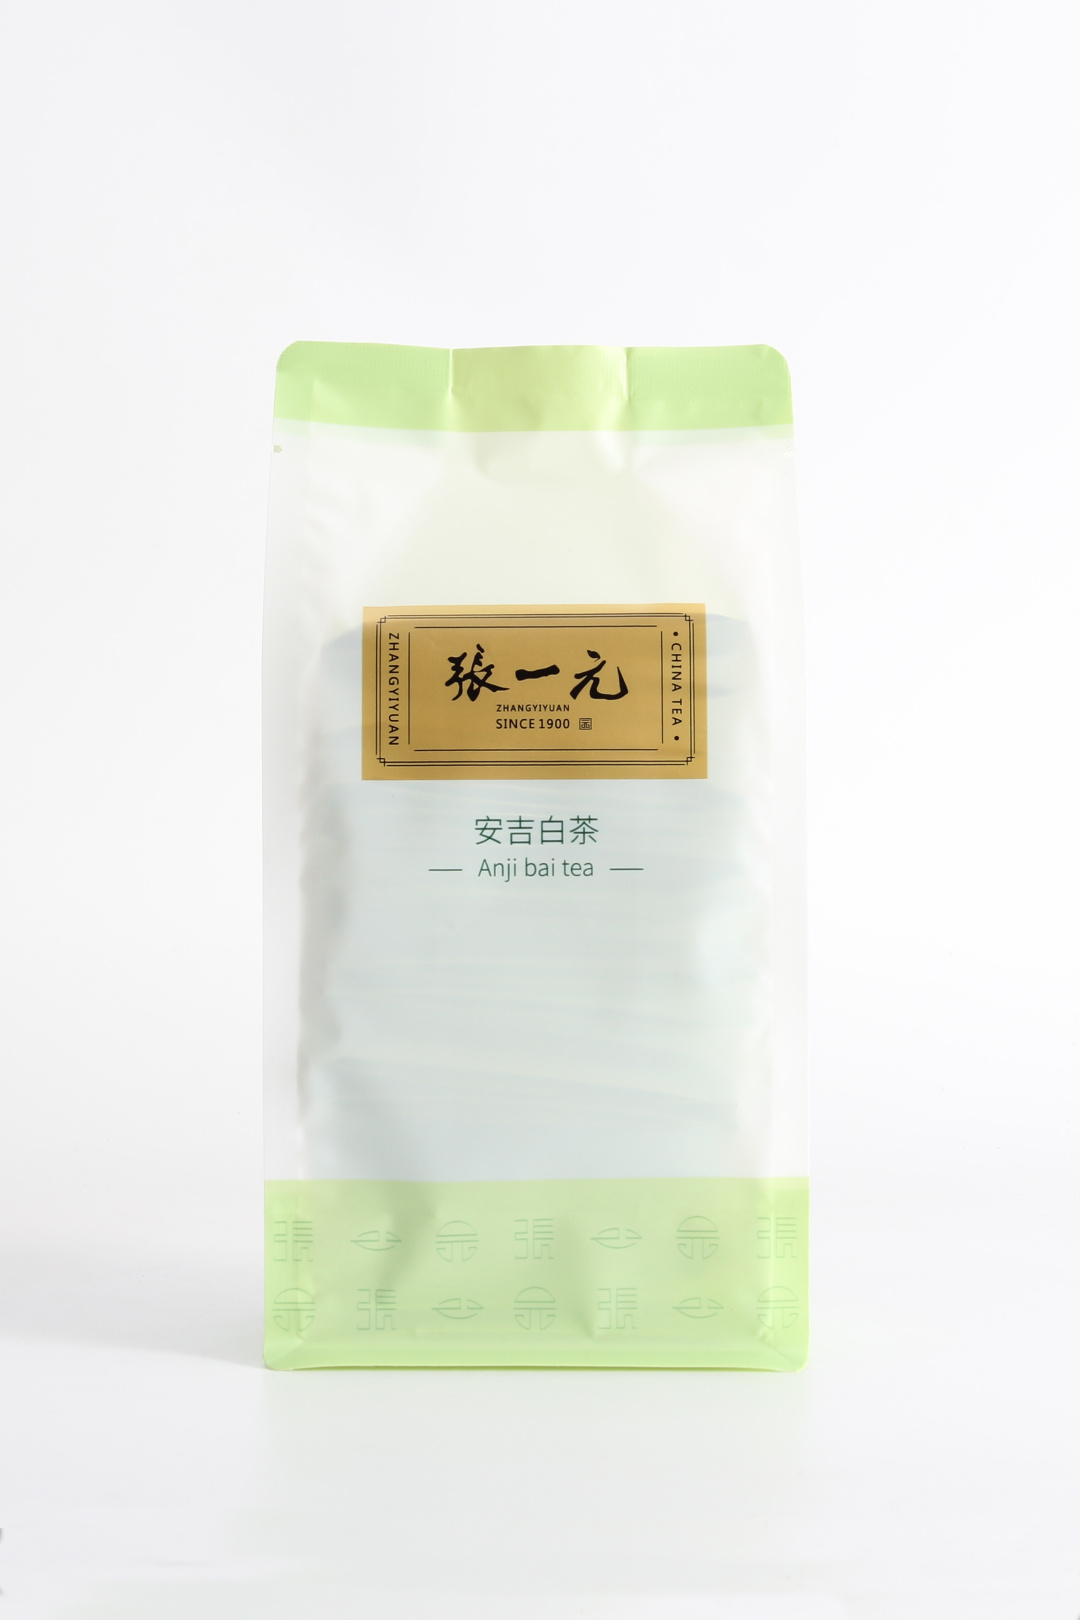 【绿茶展卖季 包邮】张一元茶叶 经典系列 绿茶 安吉白茶 袋装 80g